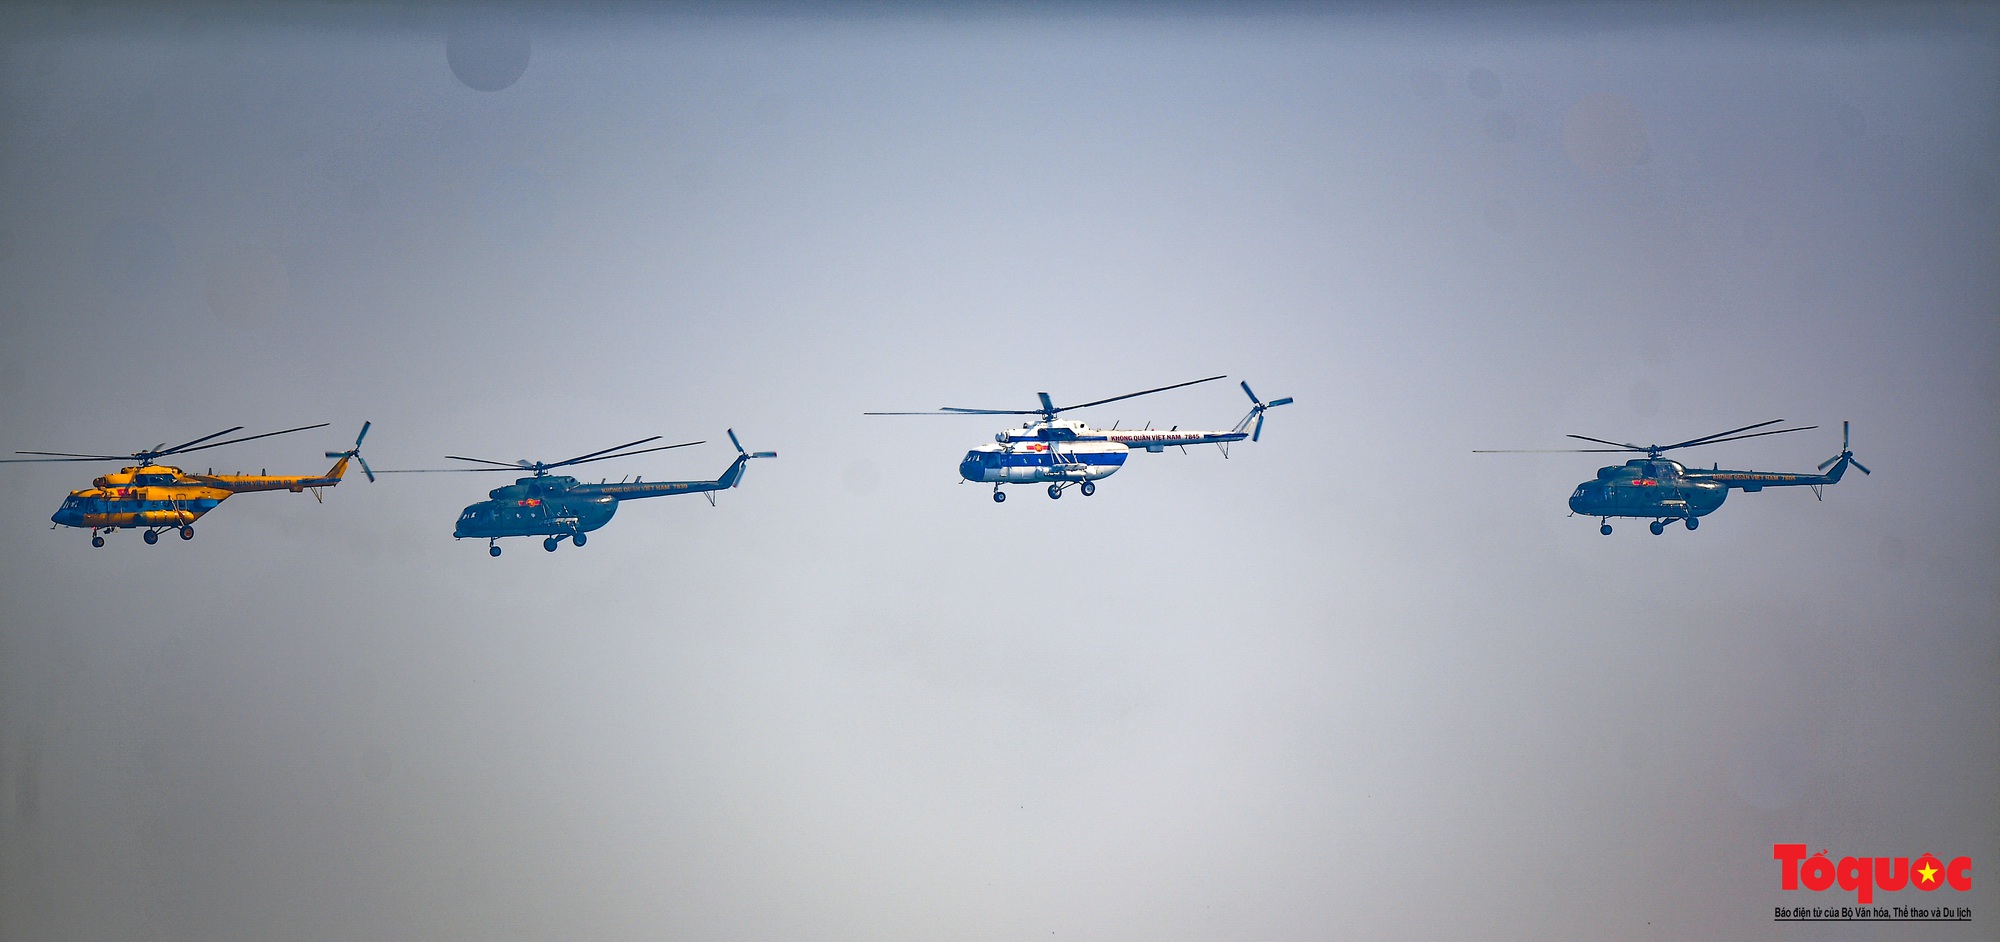 Mãn nhãn với  máy bay chiến đấu Sukhoi và trực thăng Mi thao diễn trên bầu trời Thủ đô Hà Nội - Ảnh 3.